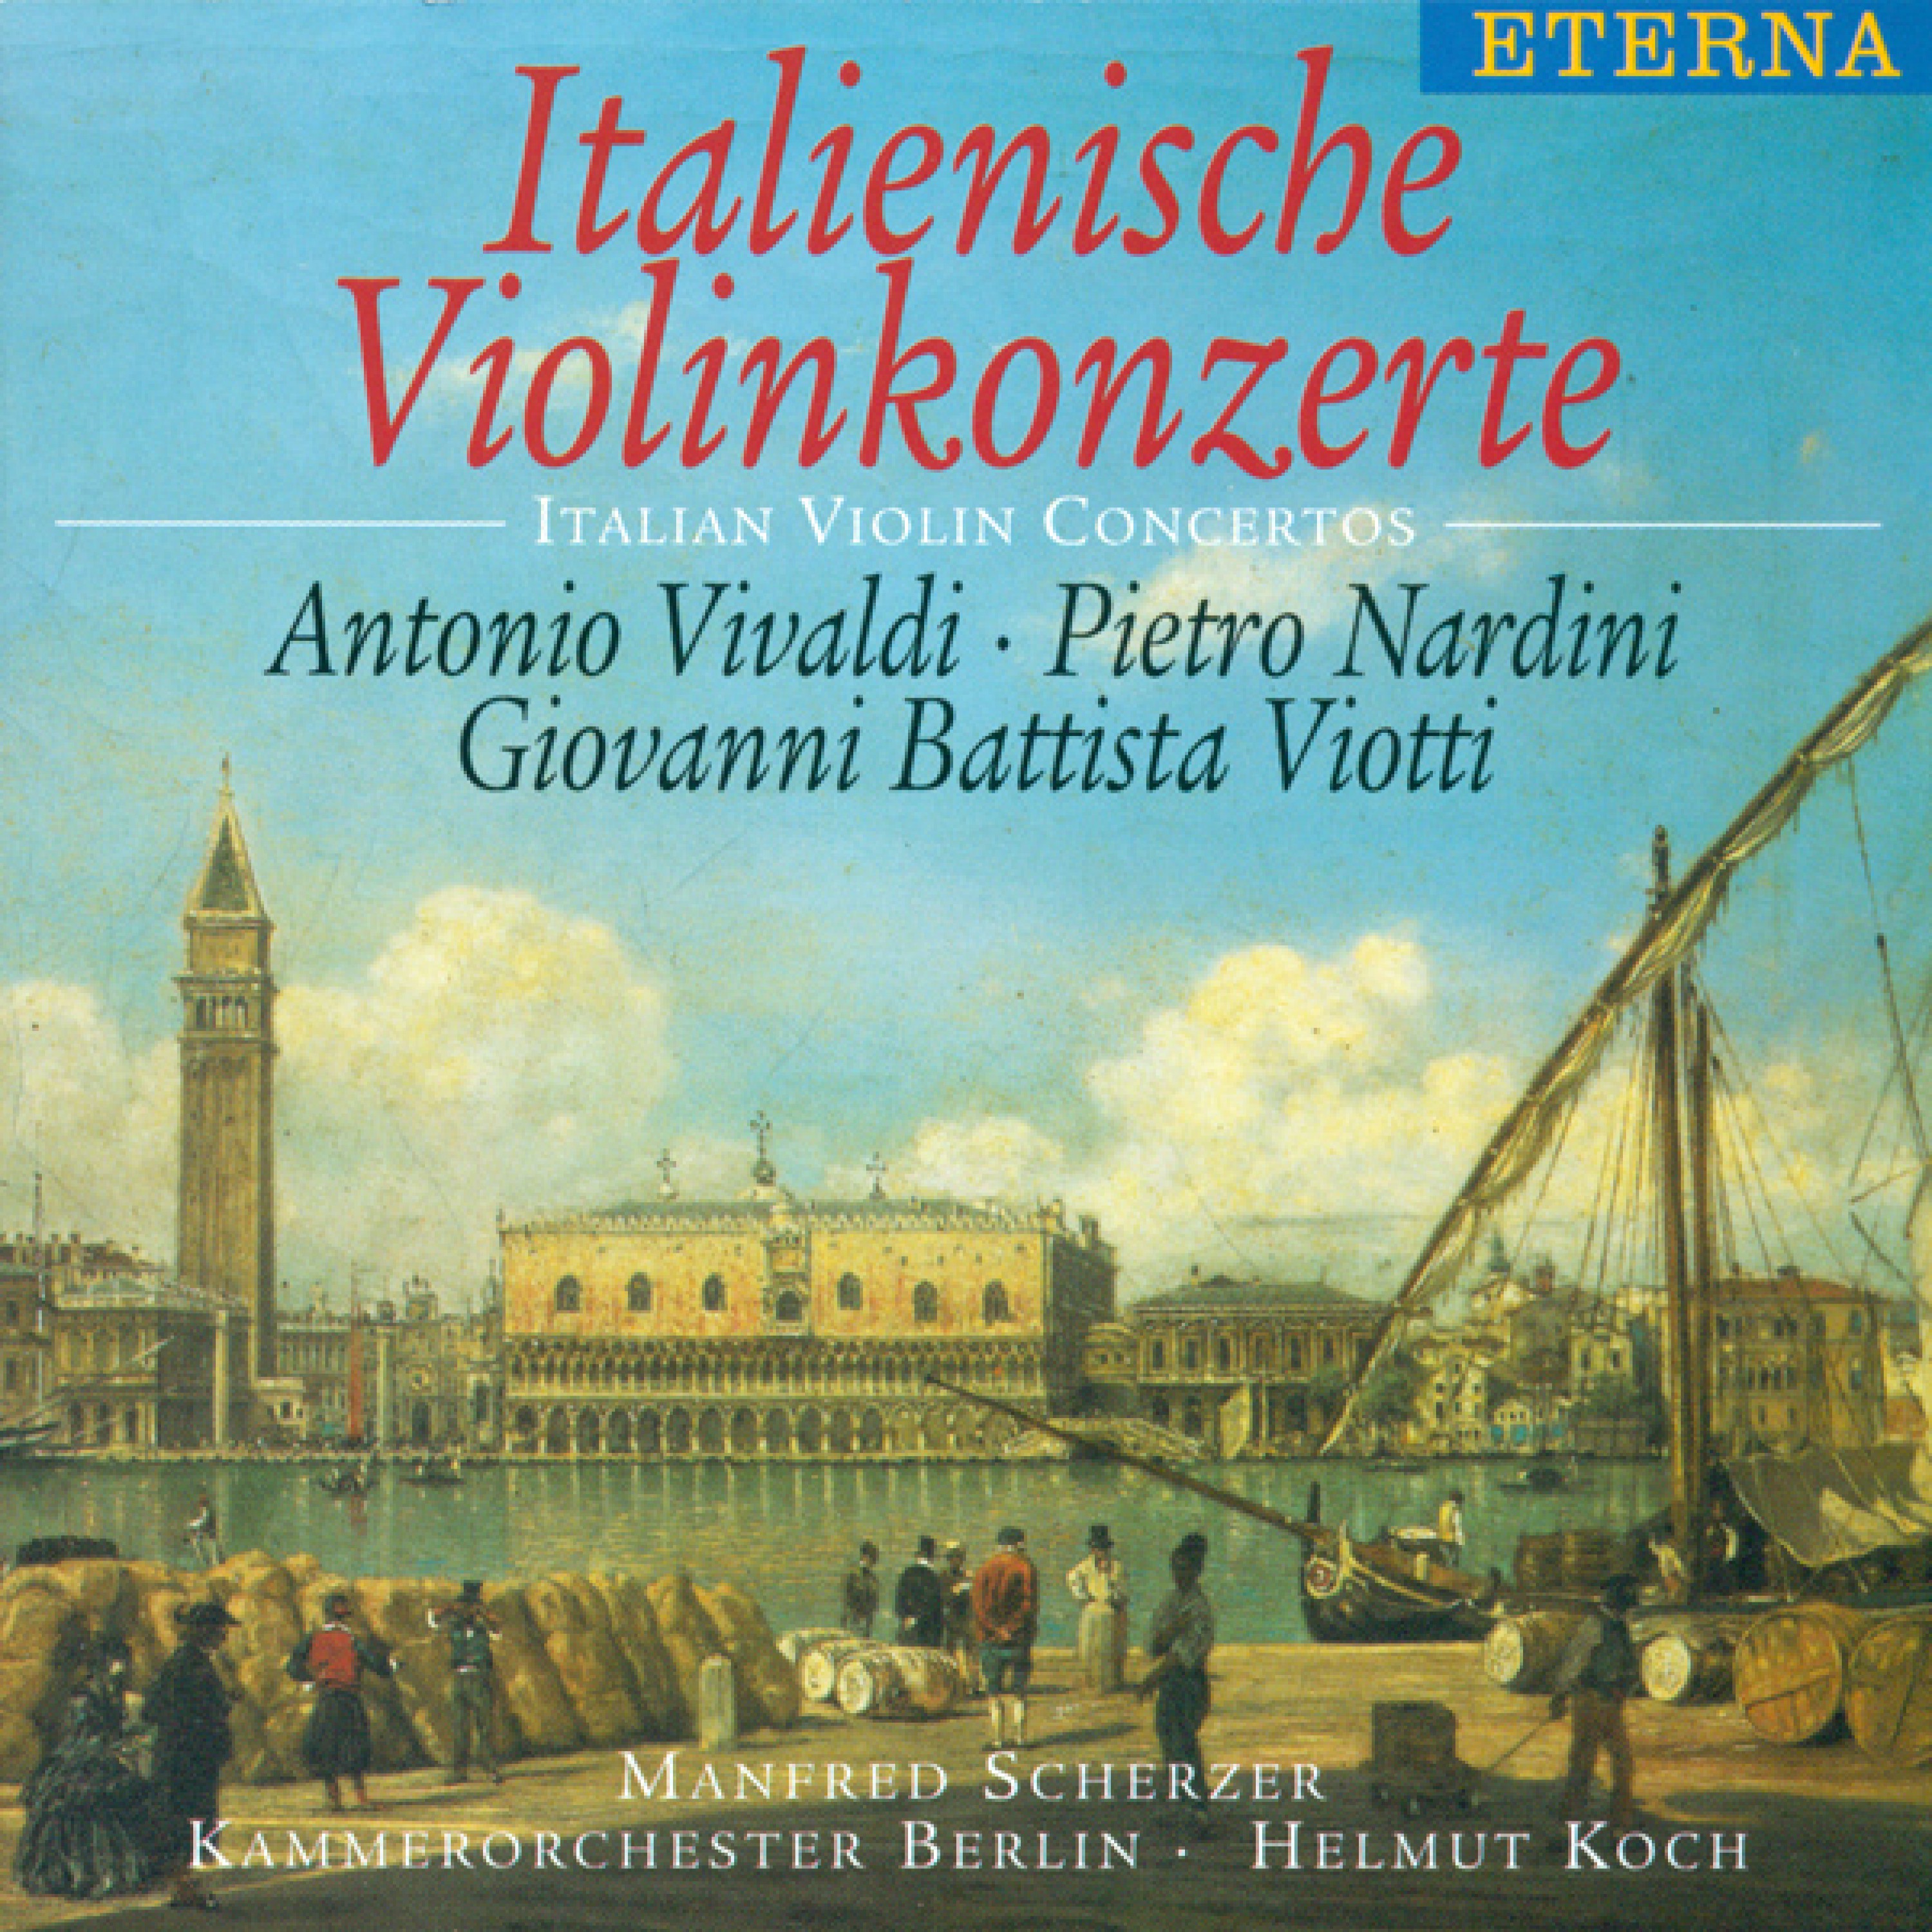 Violin Concerto in E Minor: I. Allegro moderato